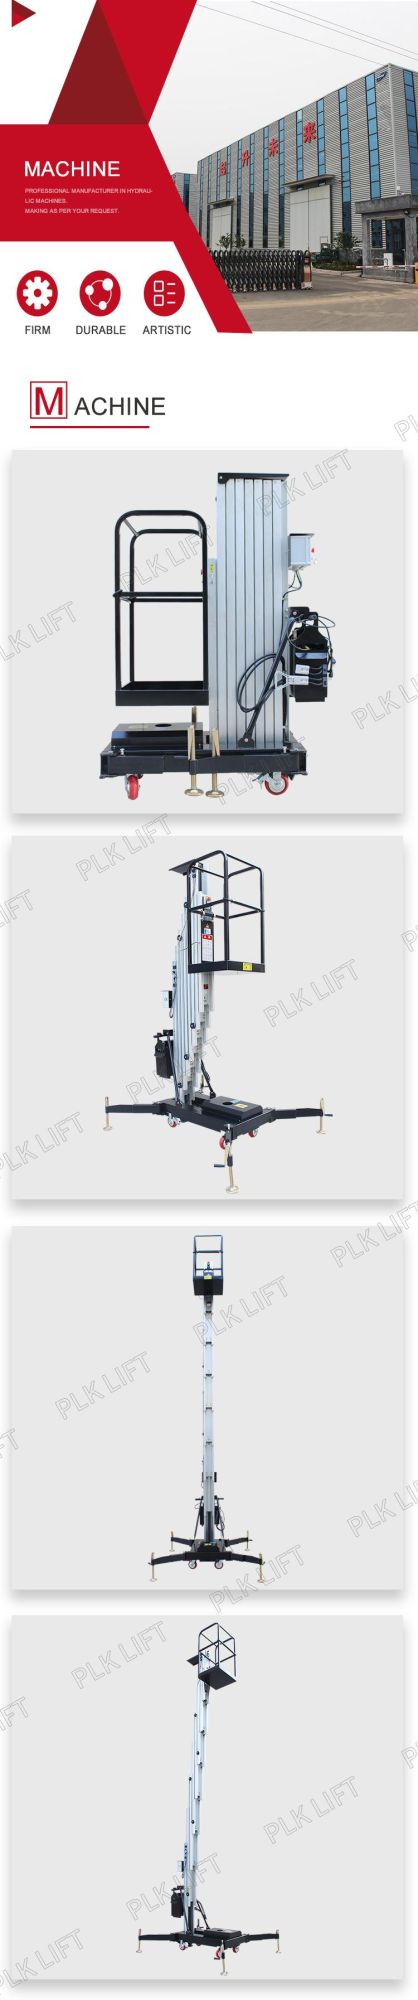 Standard 6m 8m 9m 10m Hydraulic Aerial Mast Lift Platform Man Lift